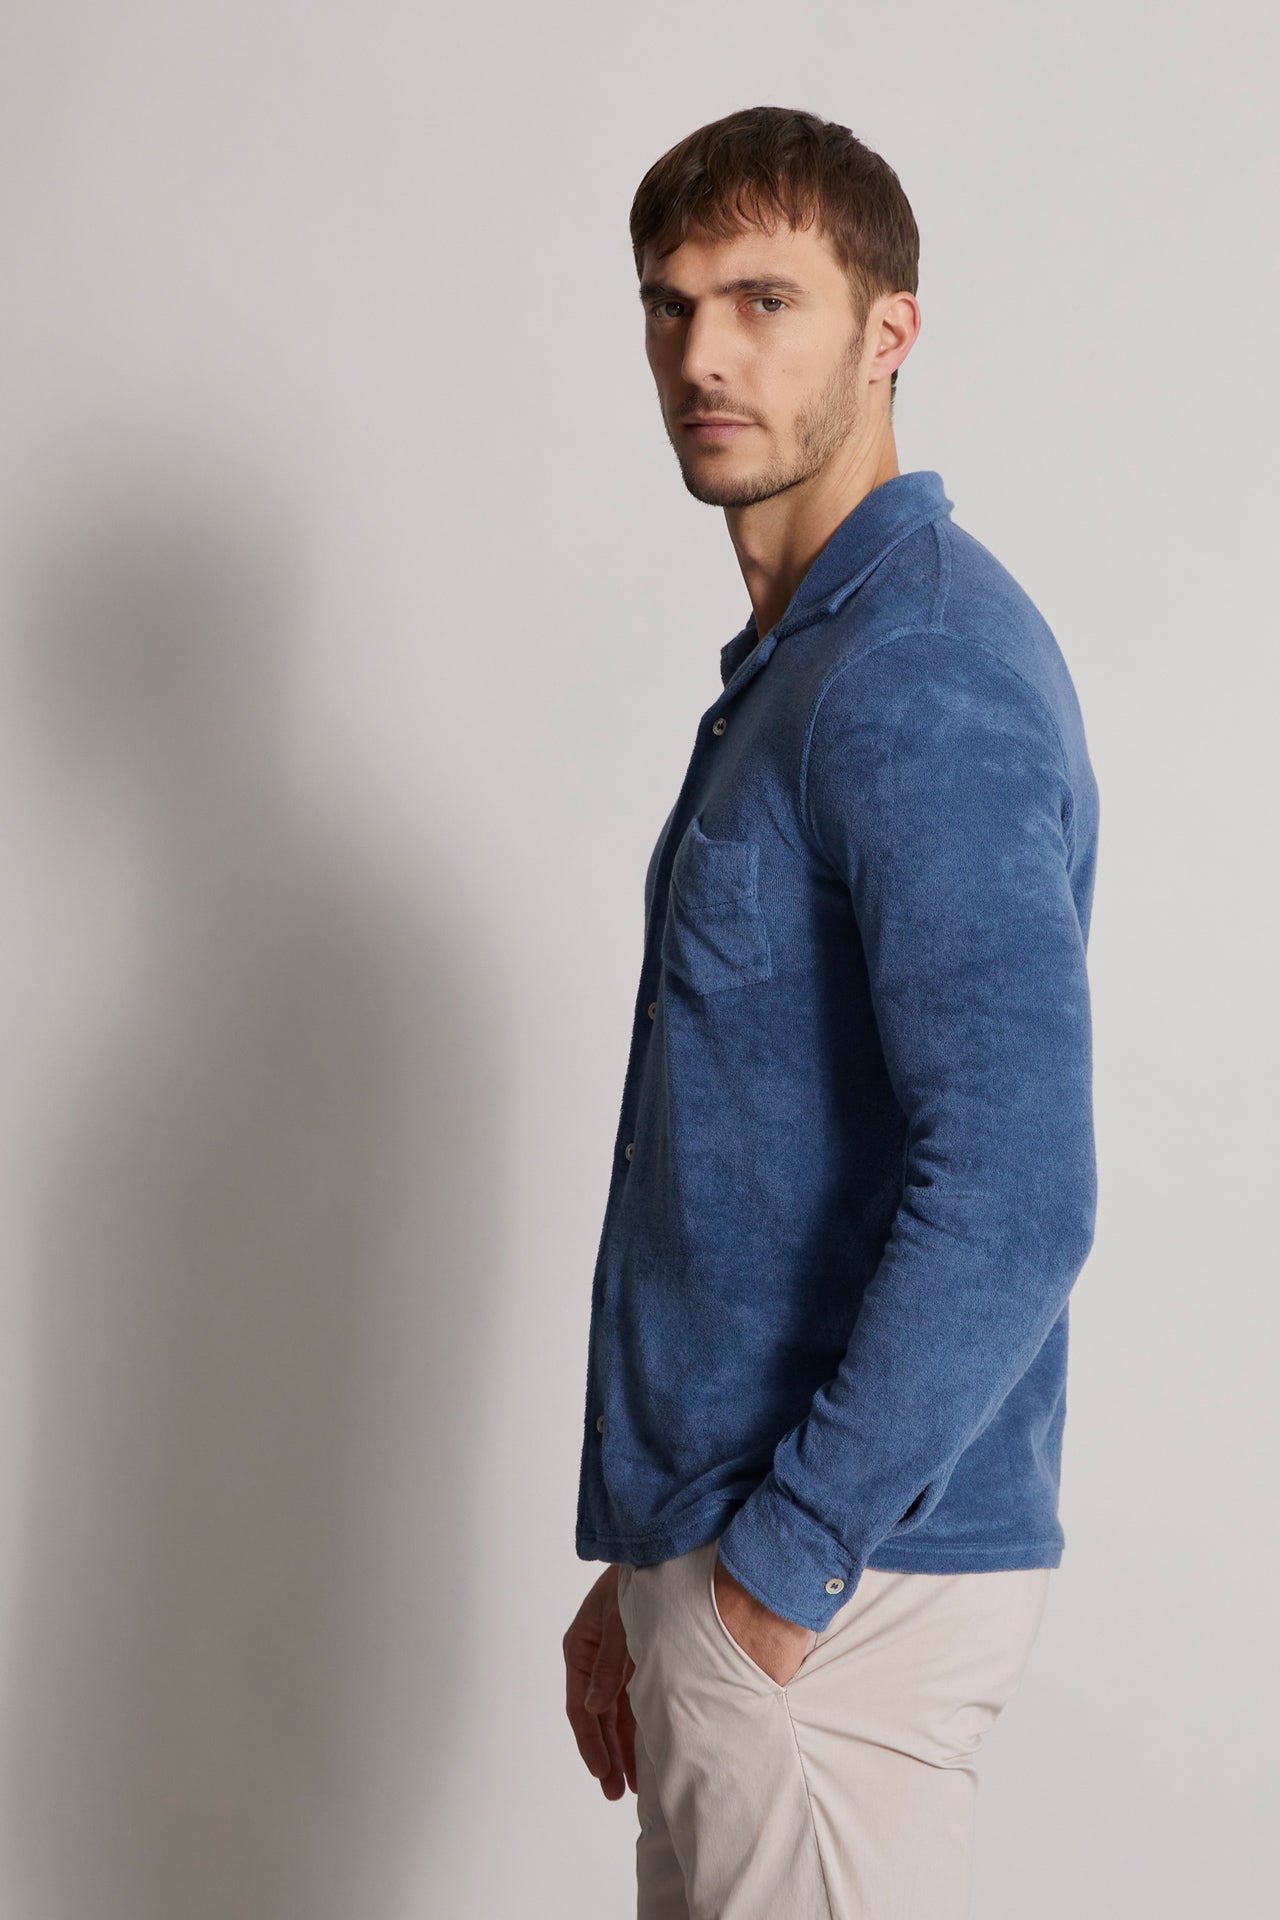 men's blue summer shirt  - side view